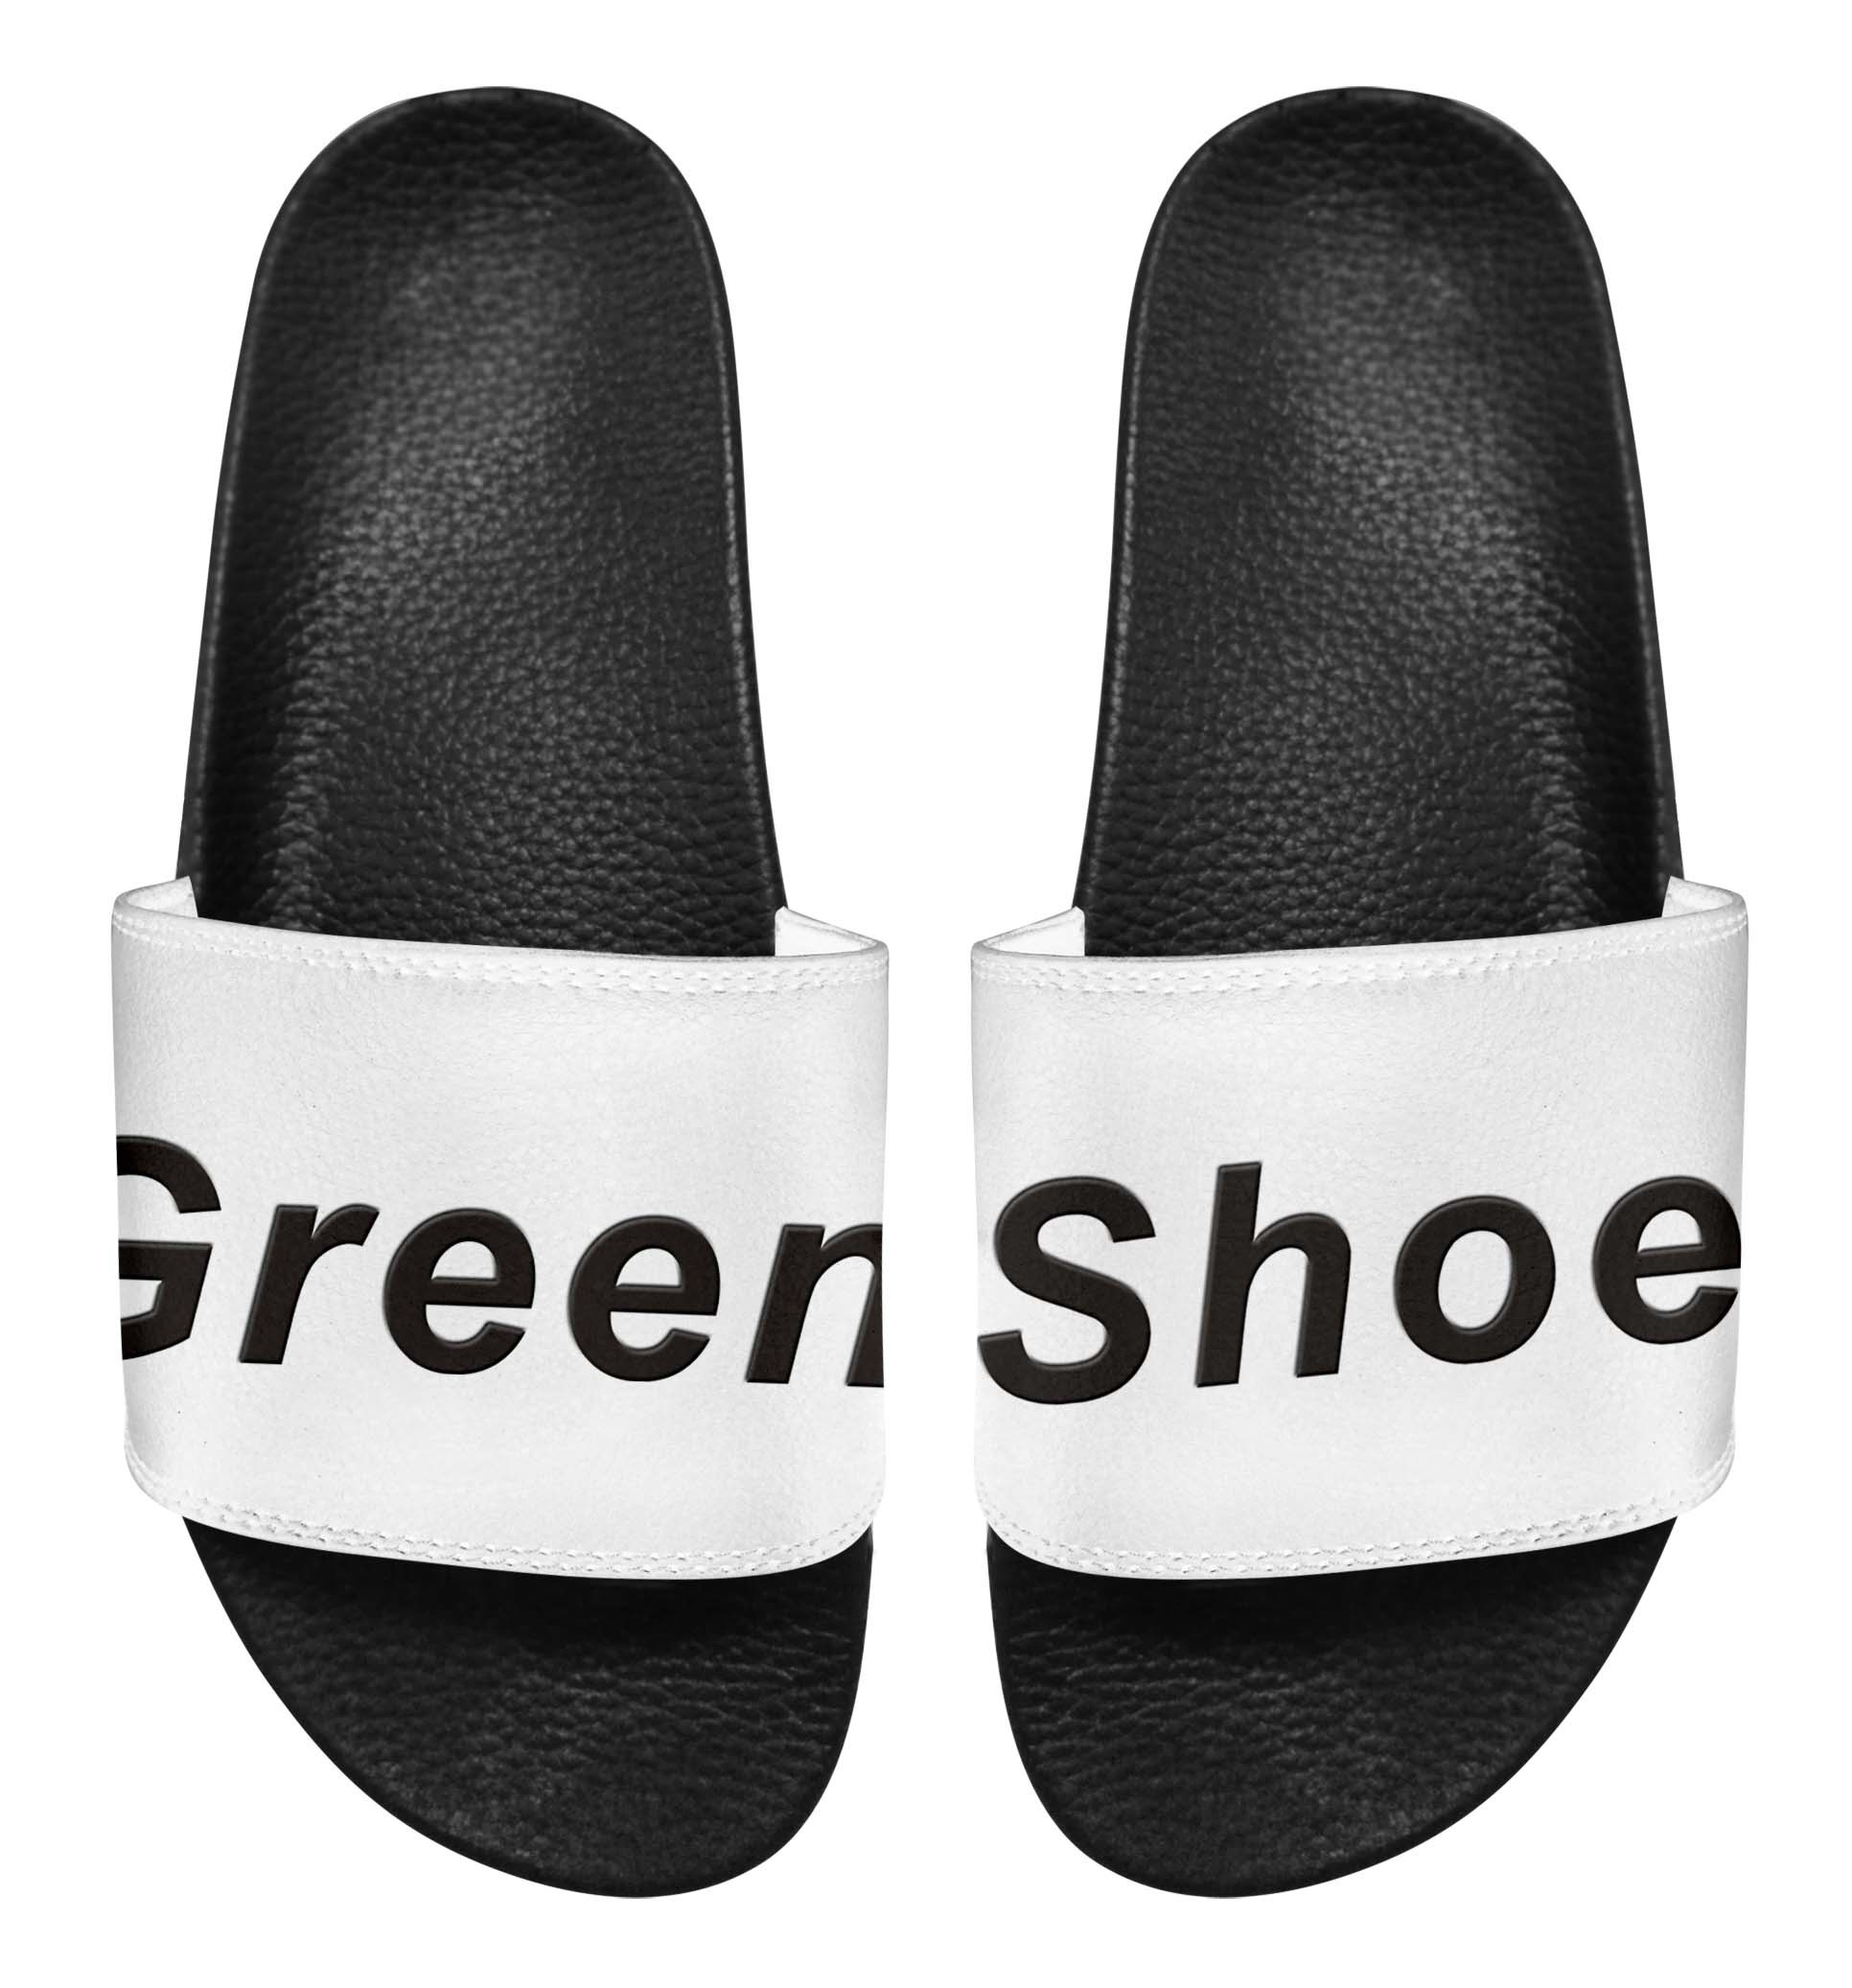 Greenshoe Summer Beach Slipper EVA Flat Shoes Slides Sandals